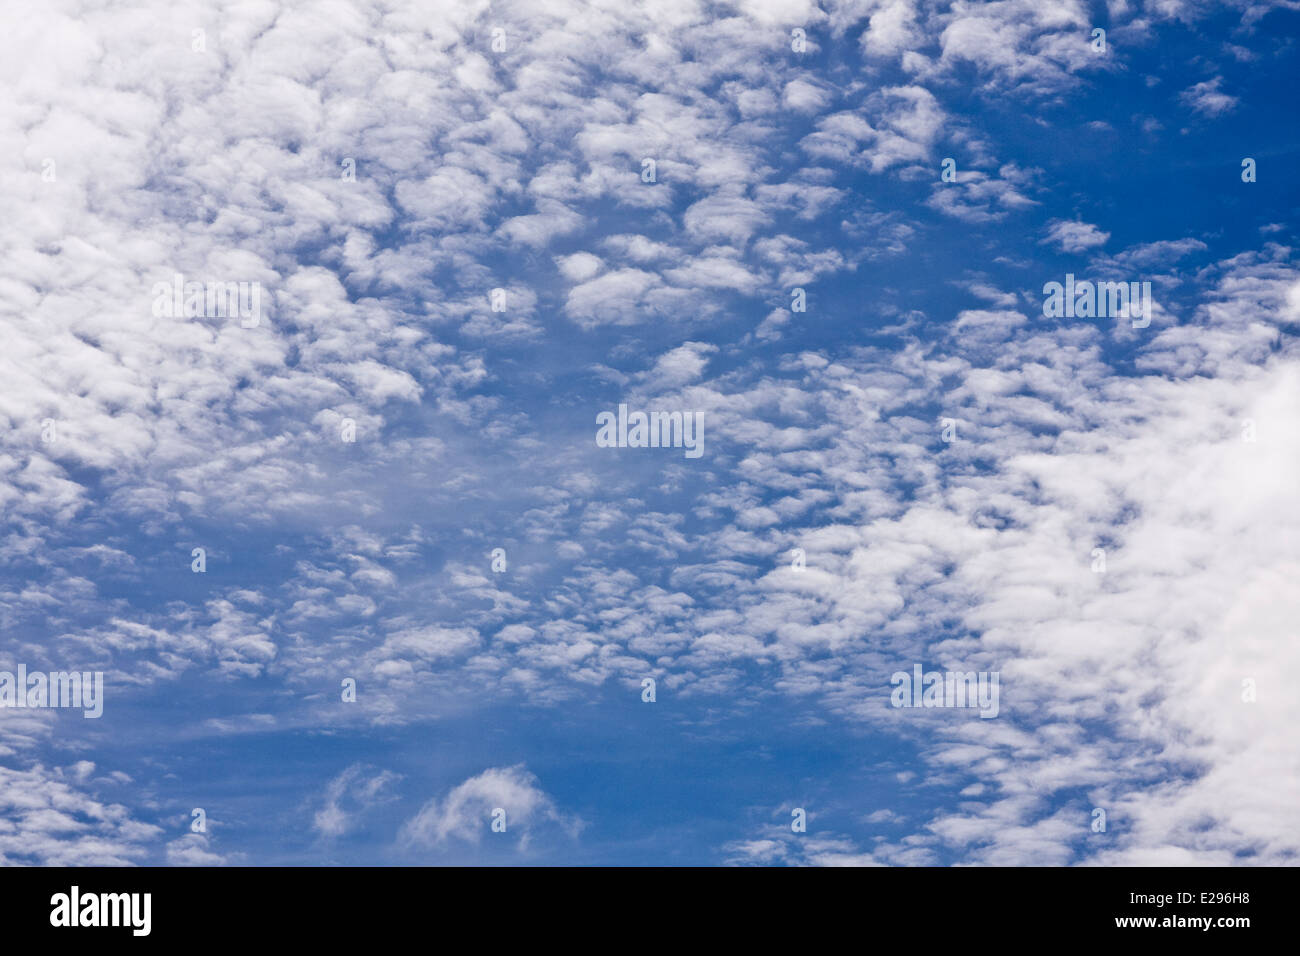 Basse altitude 'Fougère' ou 'ackerel' les nuages qui se forment des schémas inhabituels dans le ciel au-dessus de Dundee, Royaume-Uni Banque D'Images